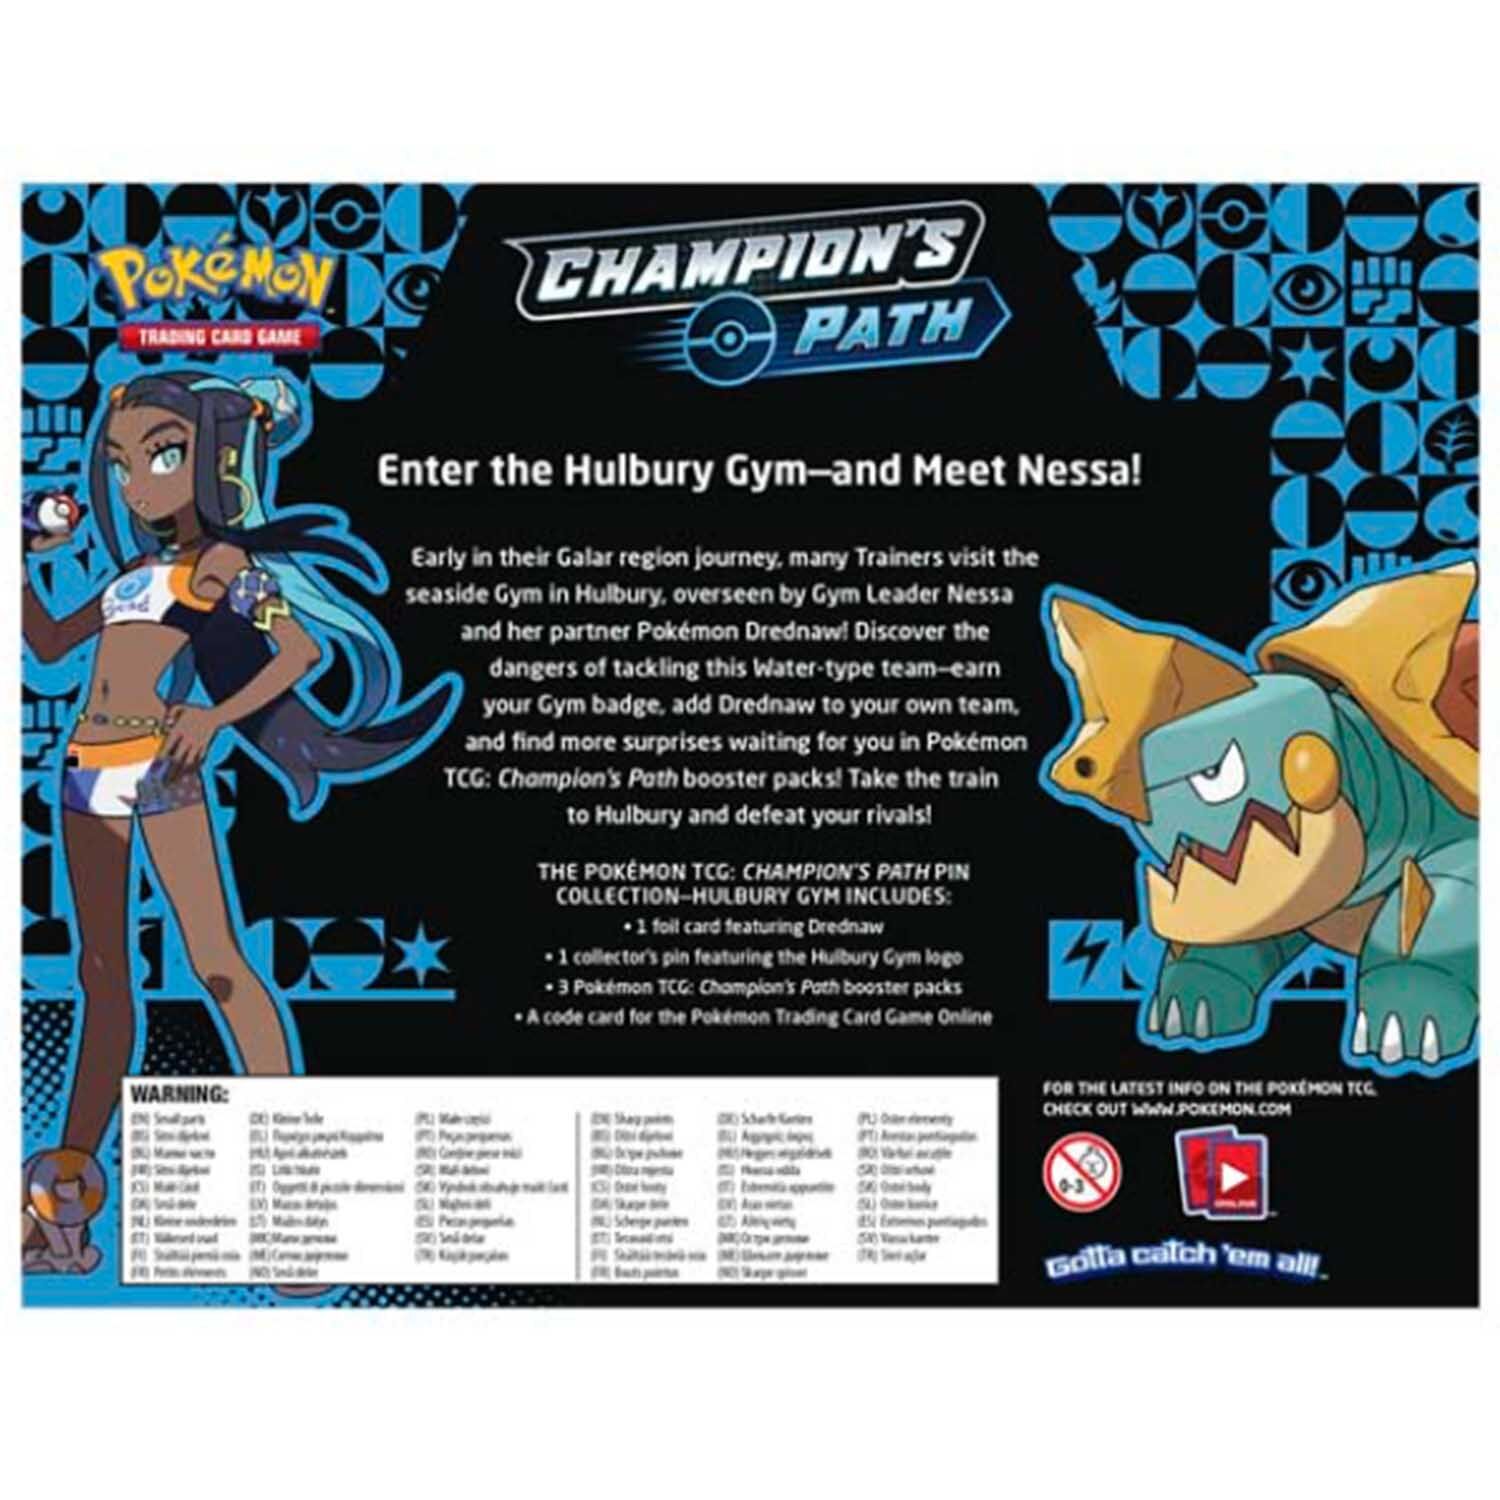 Pokémon Champion's Path Pin Collection Hulbury Gym - EN